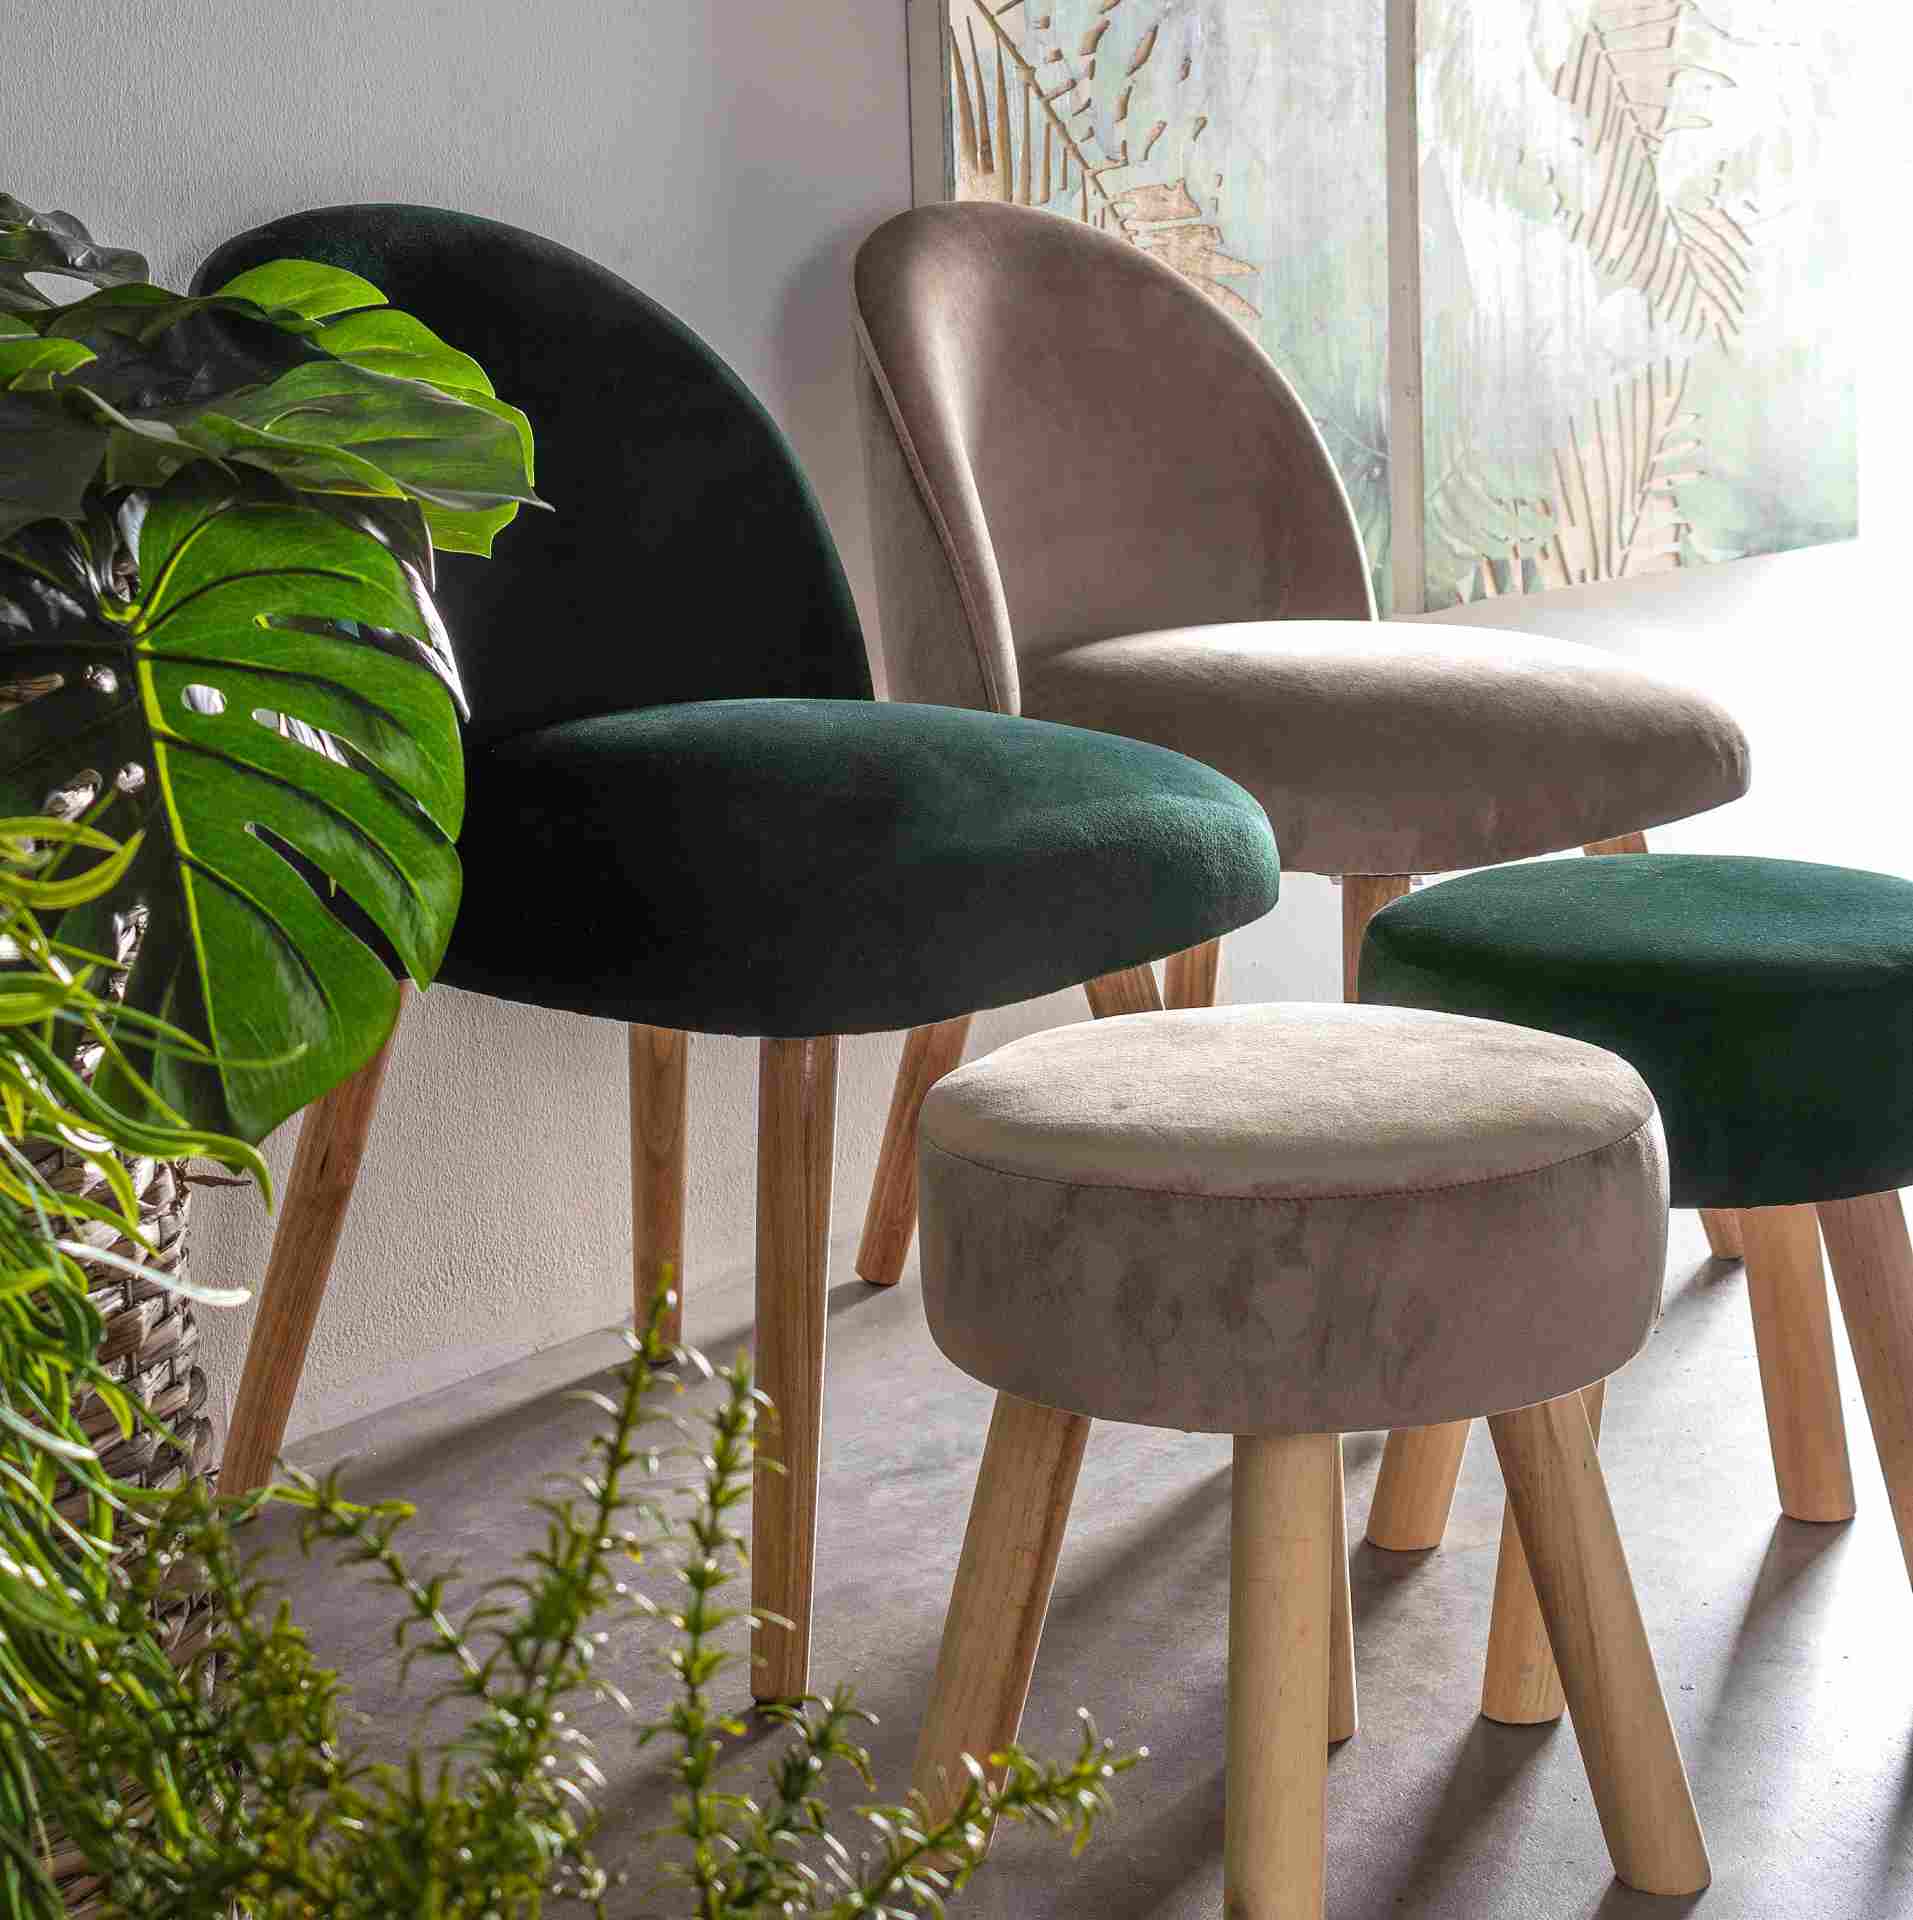 Der Stuhl Adeline überzeugt mit seinem klassischen Design. Gefertigt wurde er aus Stoff in Samt-Optik, welcher einen Taupe Farbton besitzt. Das Gestell ist aus Buchenholz und hat eine natürliche Farbe. Der Stuhl besitzt eine Sitzhöhe von 42 cm. Die Breite